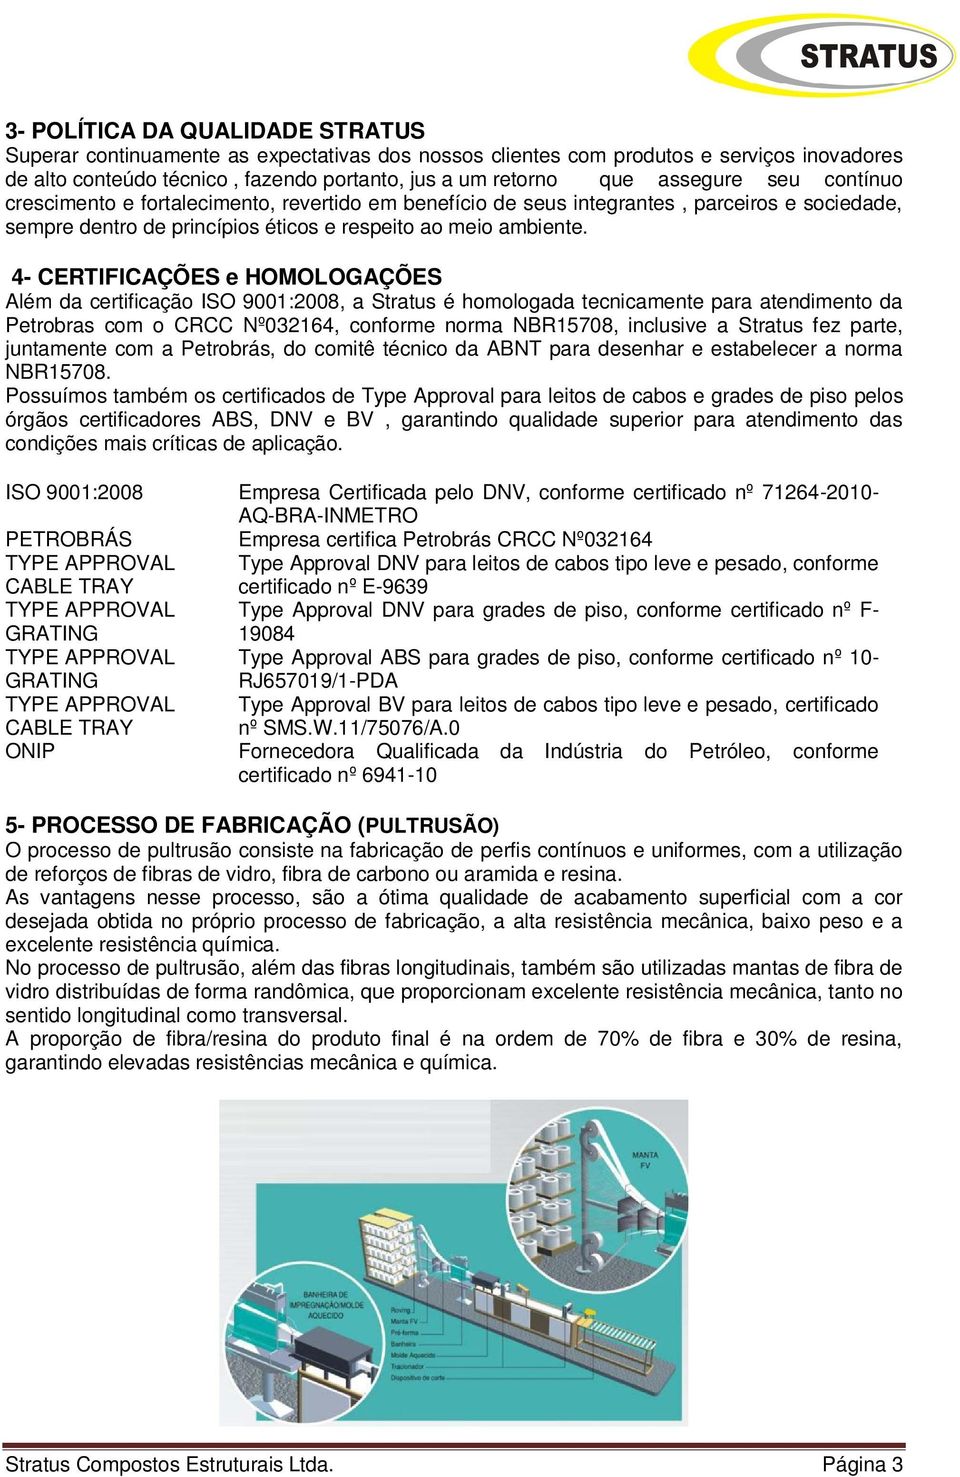 4- CERTIFICAÇÕES e HOMOLOGAÇÕES Além da certificação ISO 9001:2008, a Stratus é homologada tecnicamente para atendimento da Petrobras com o CRCC Nº032164, conforme norma NBR15708, inclusive a Stratus